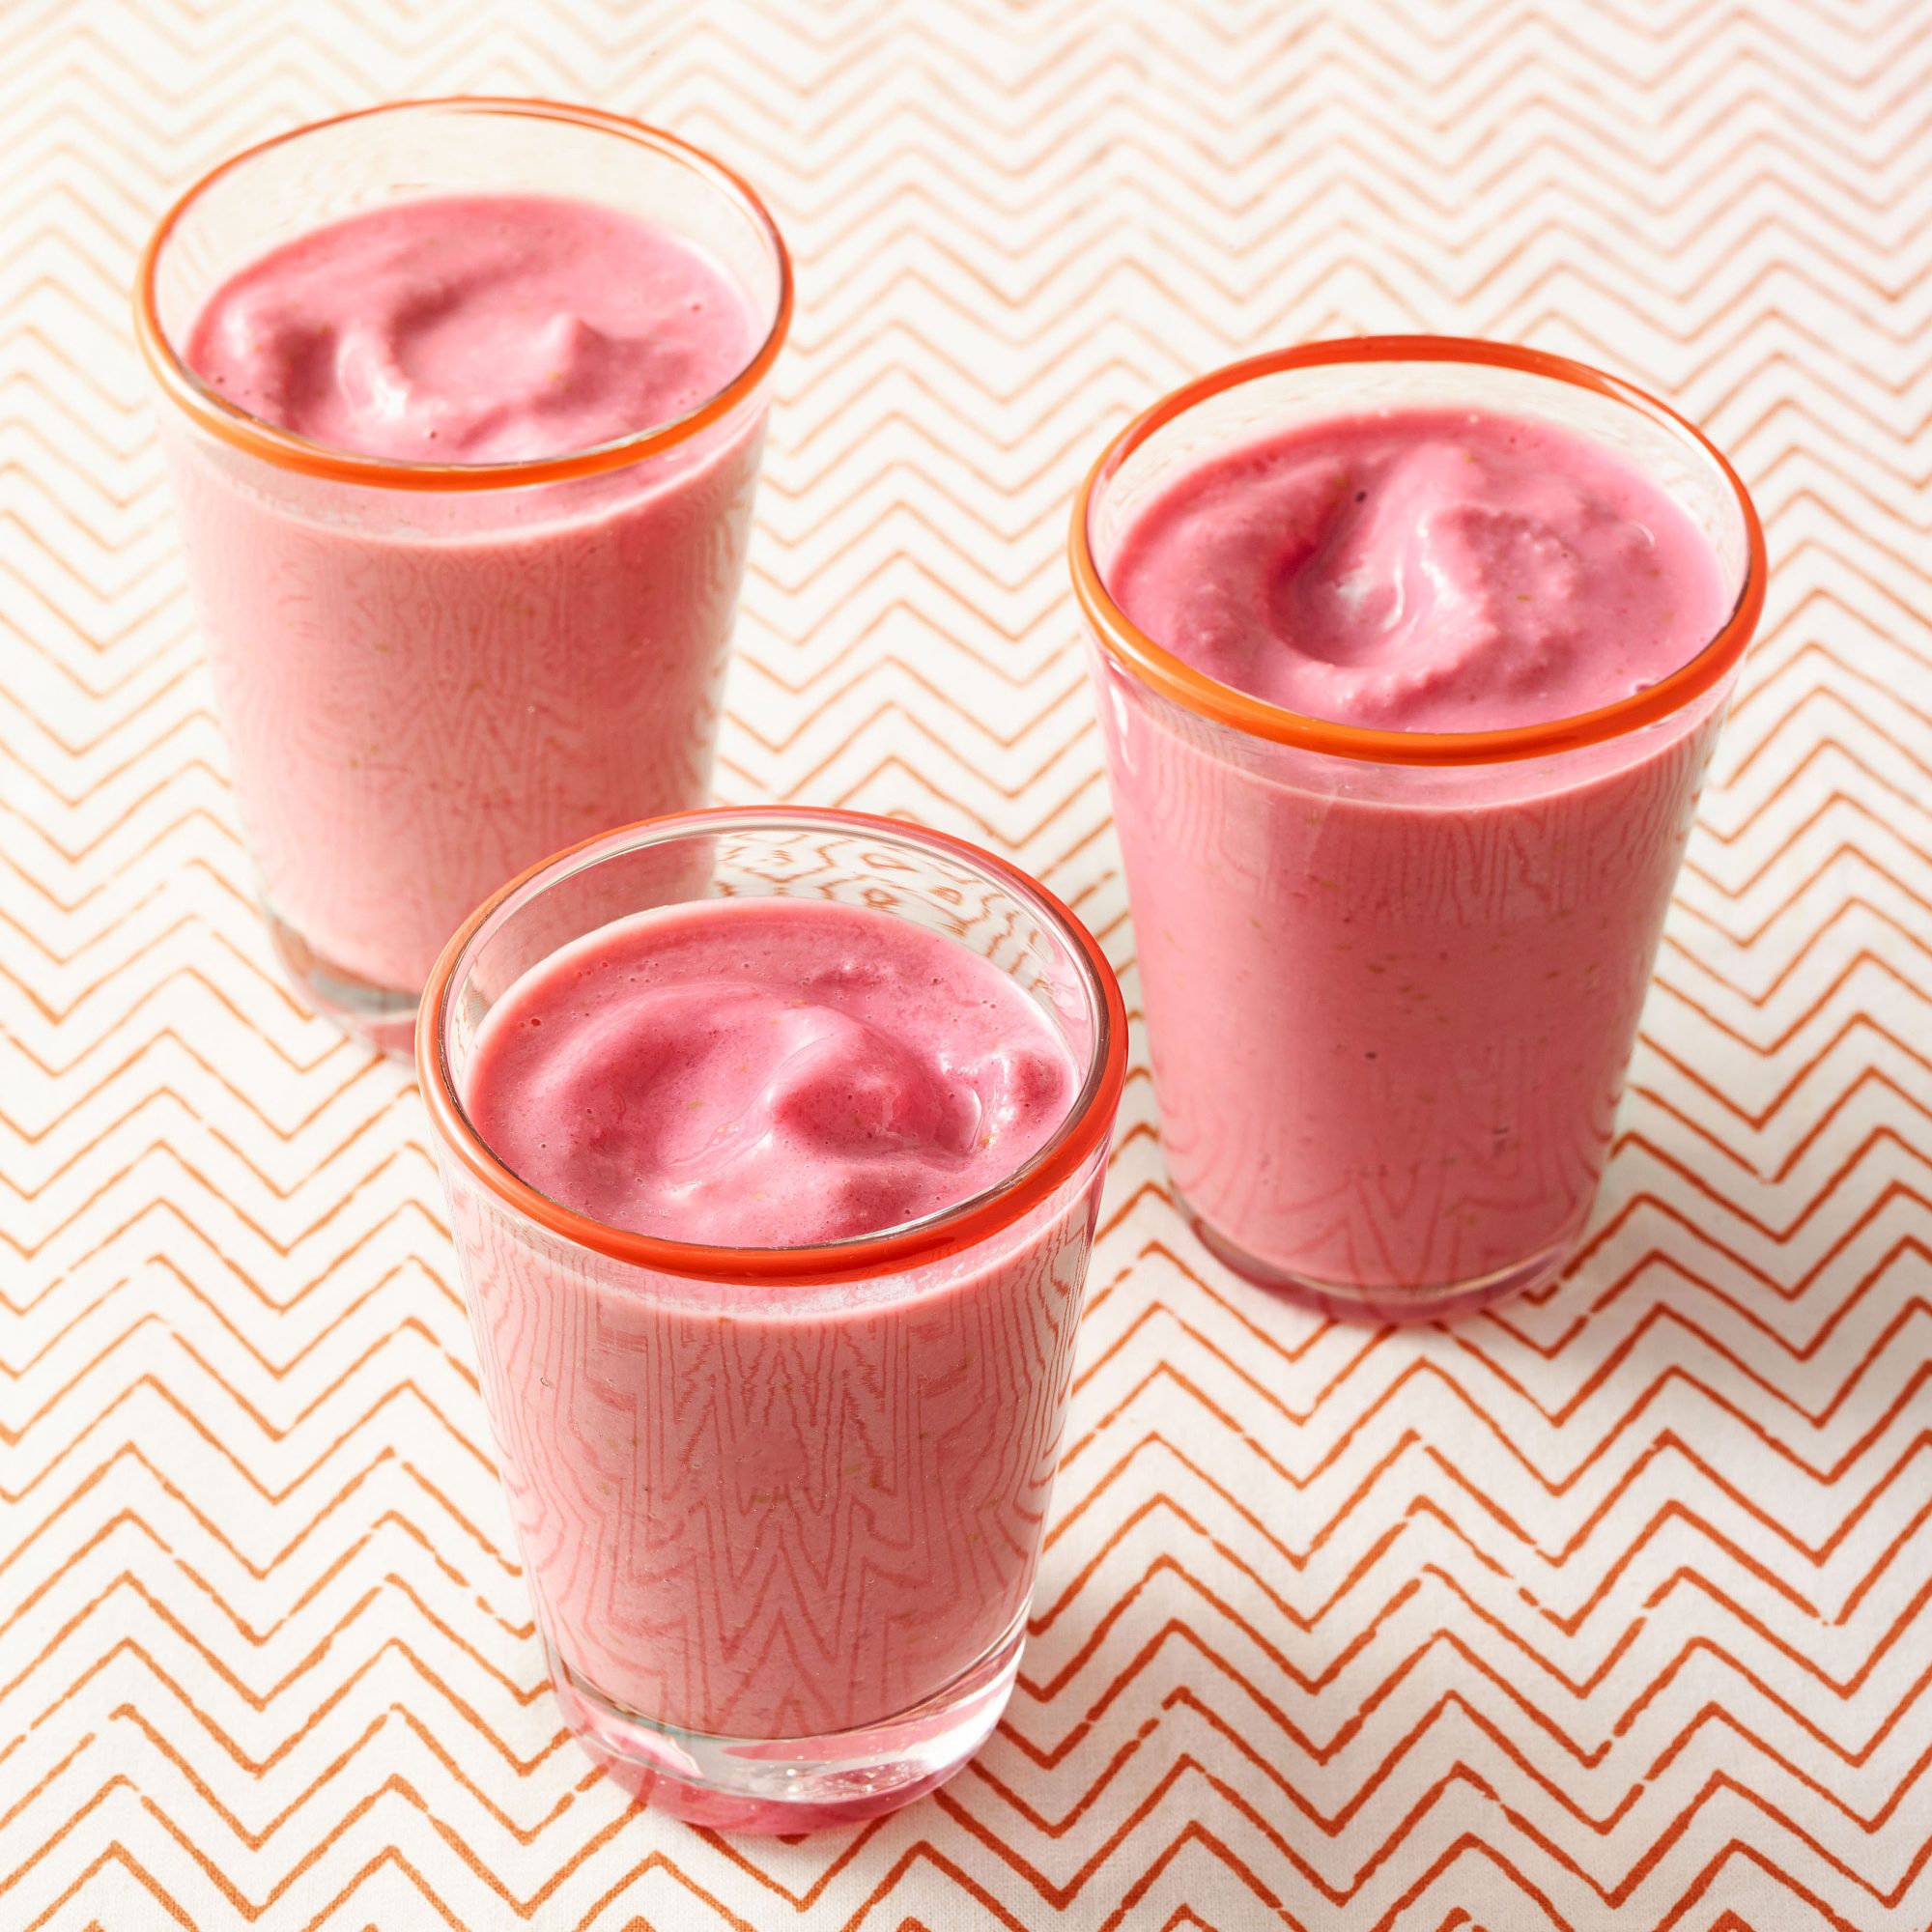 icy raspberry smoothie